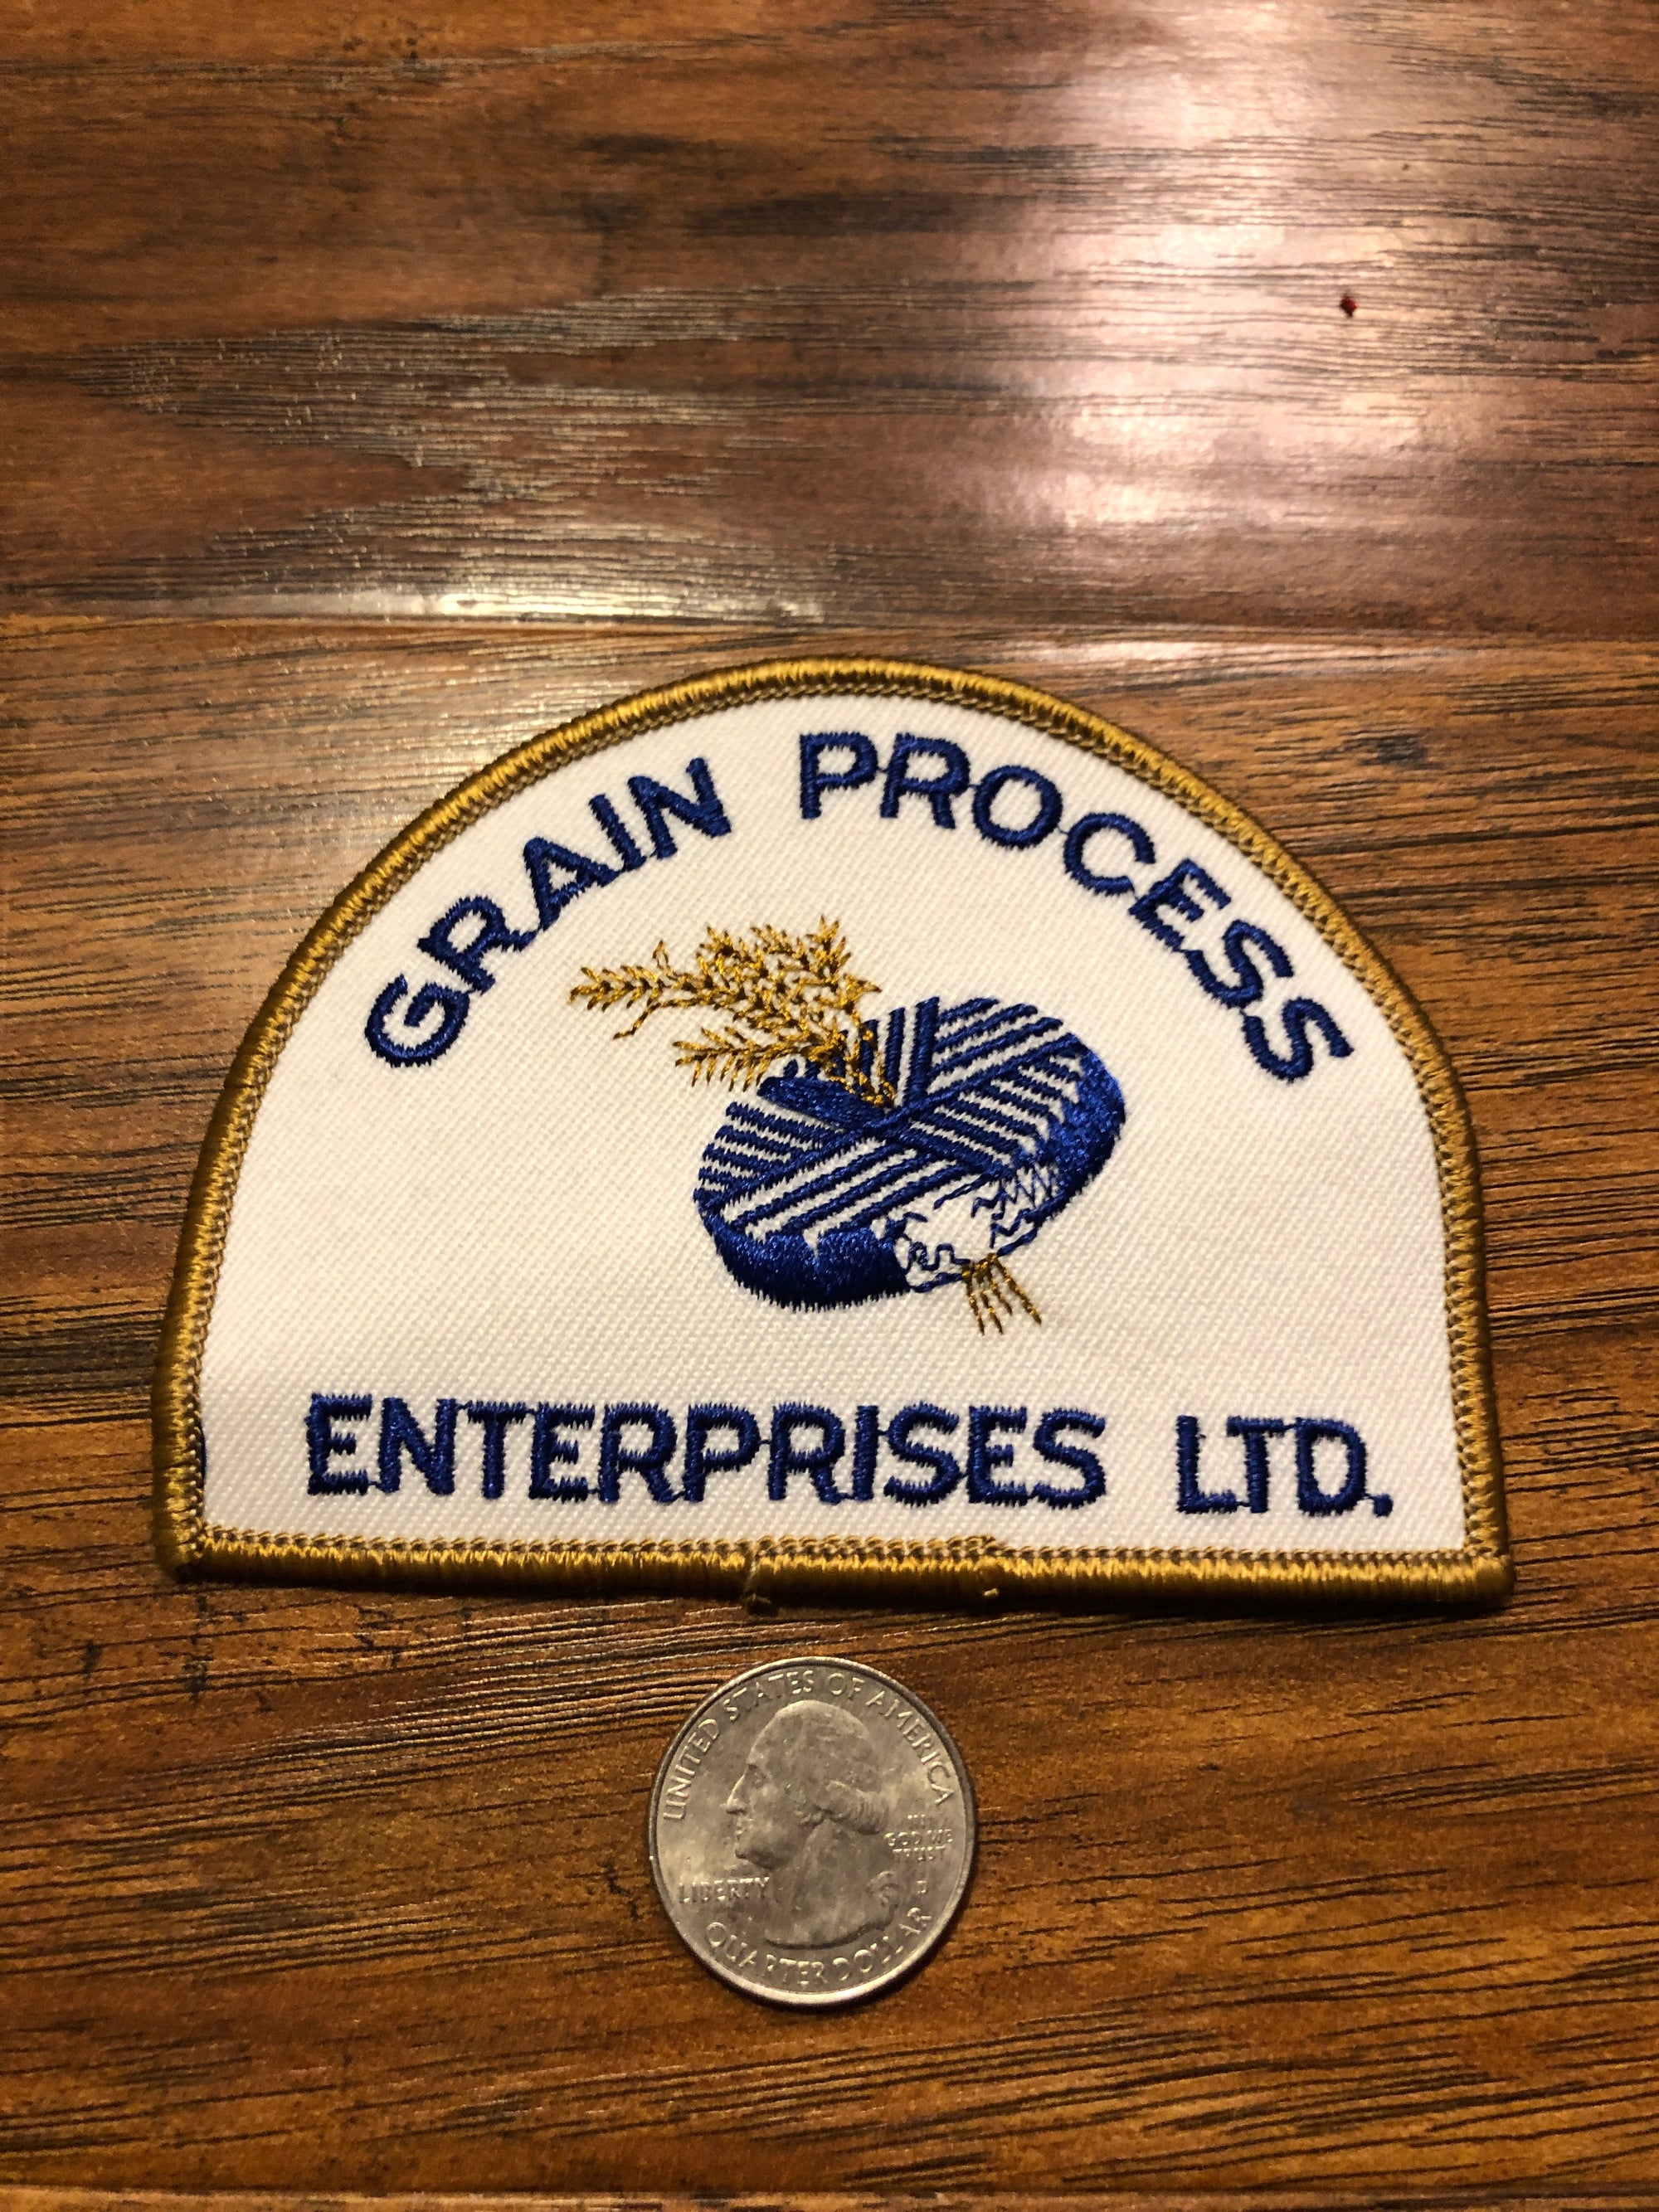 Grain Process